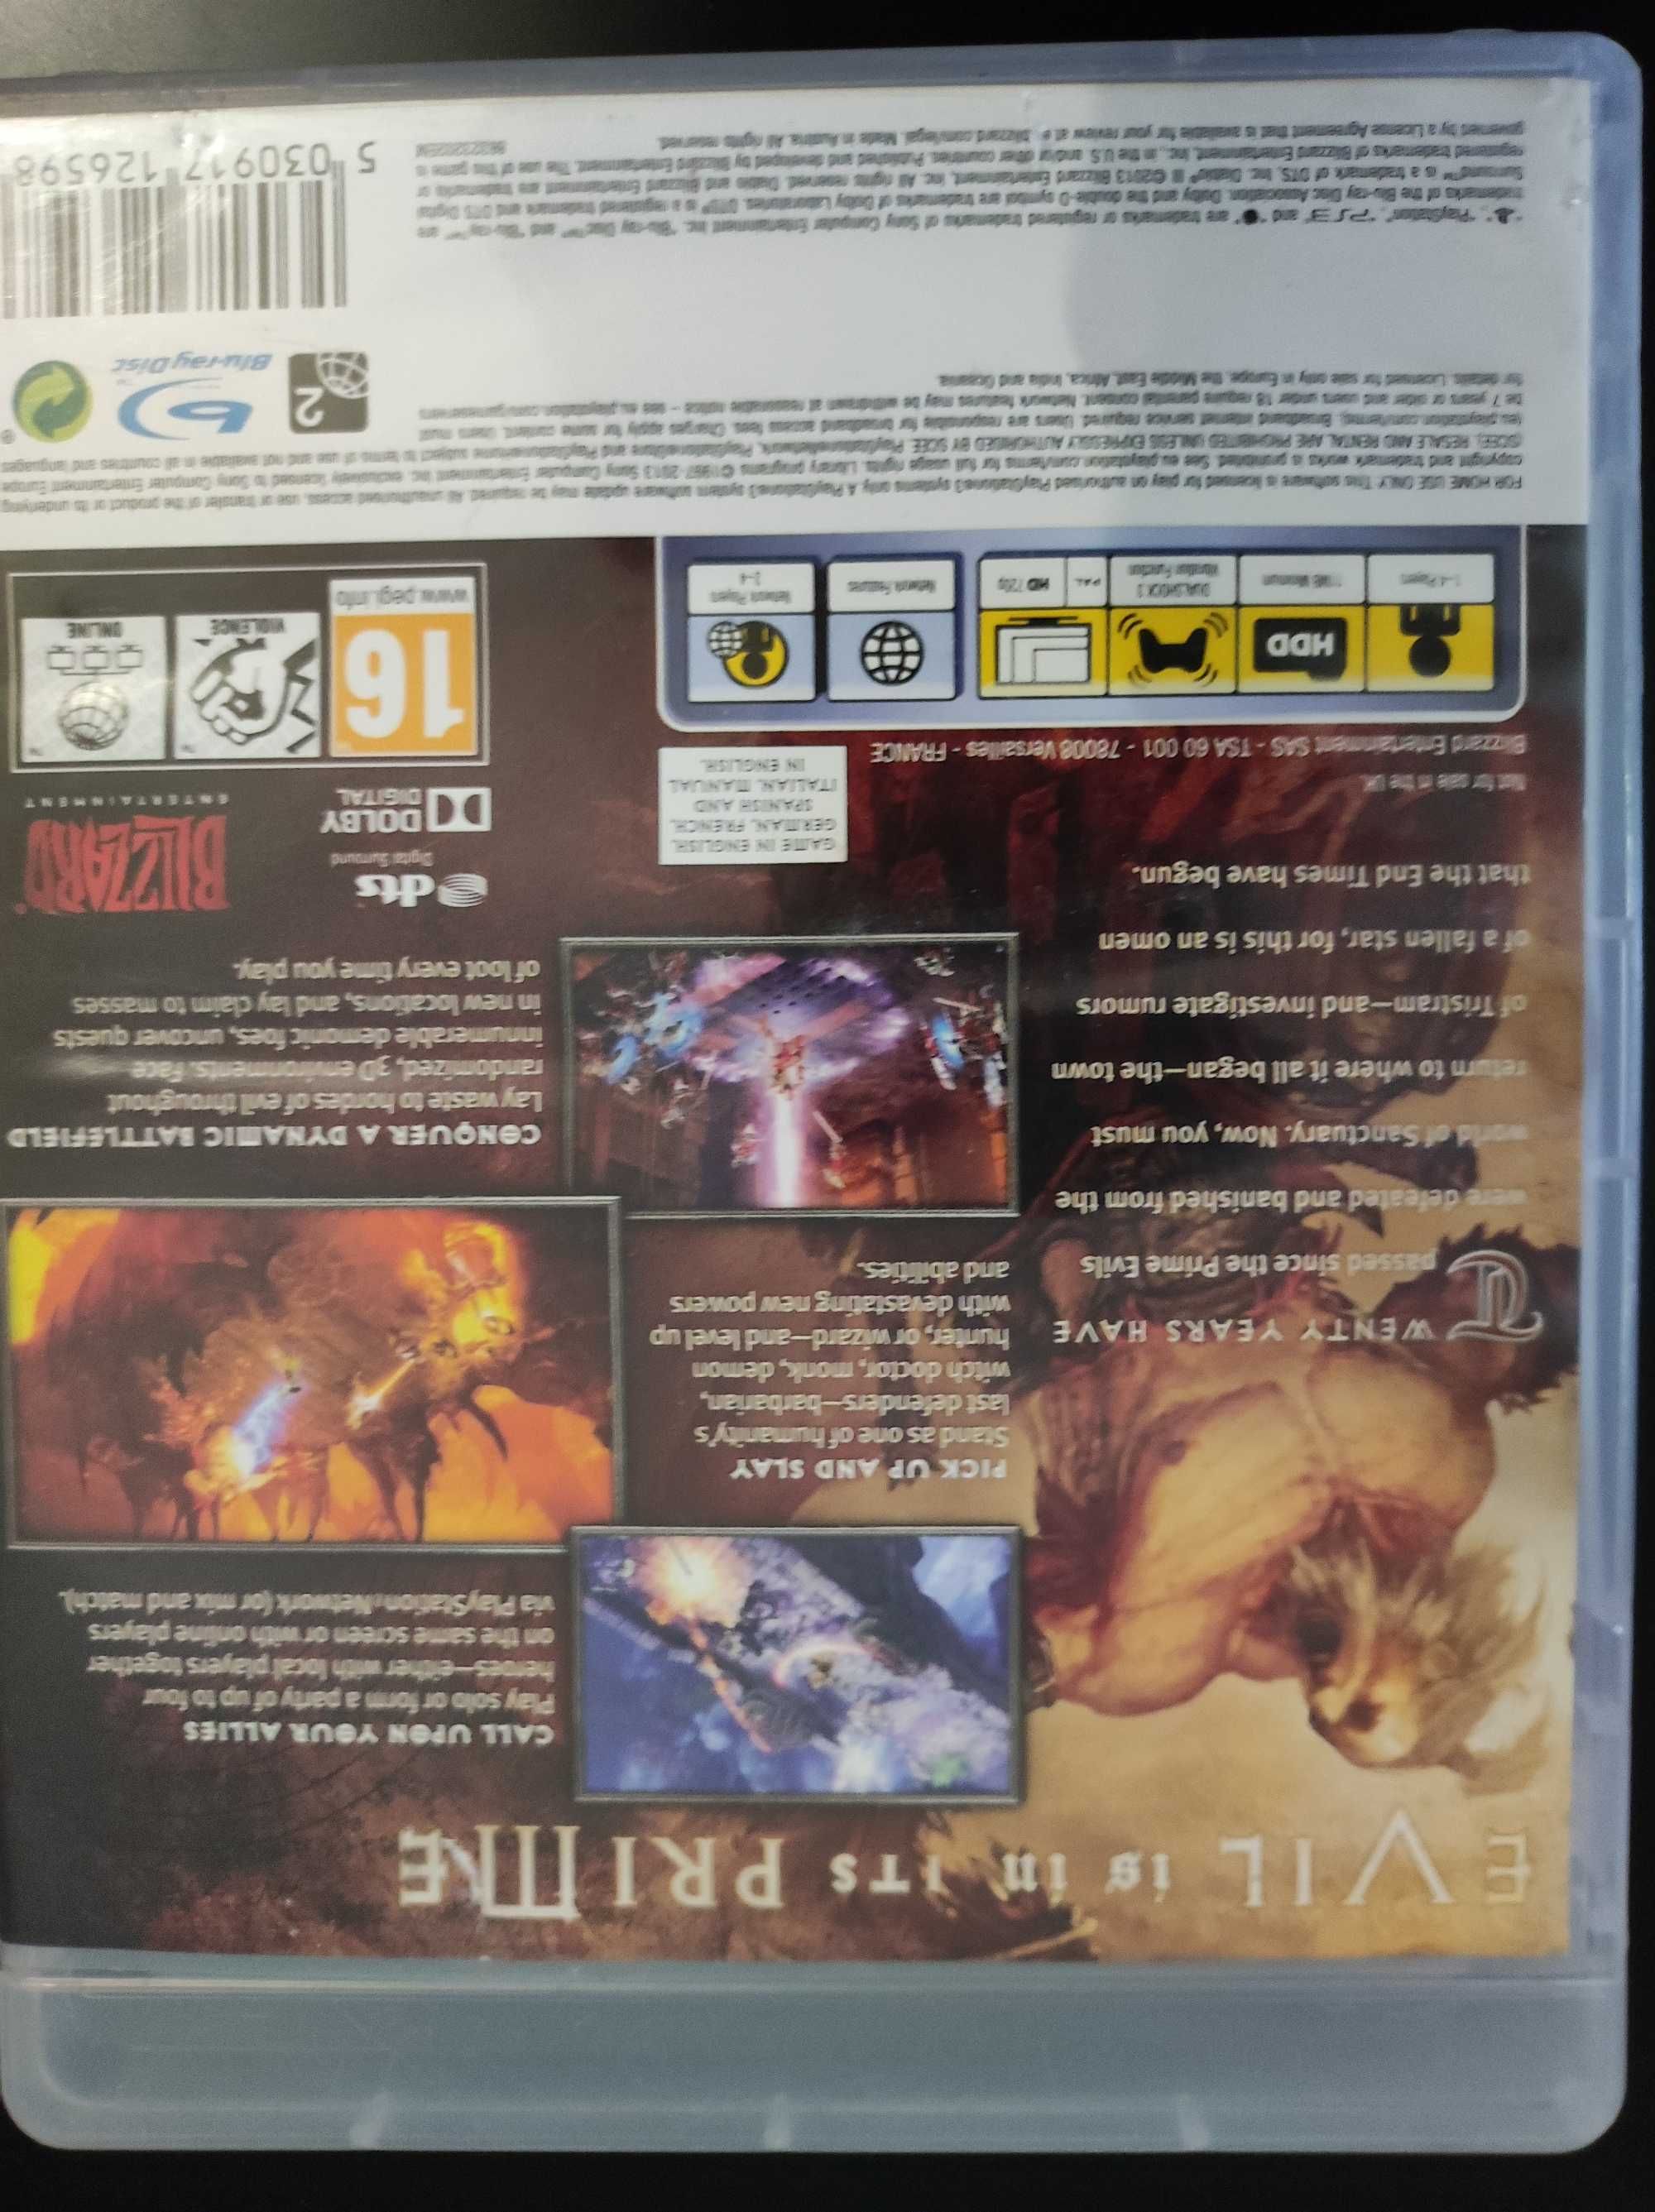 PS3-Diablo 3 Диск